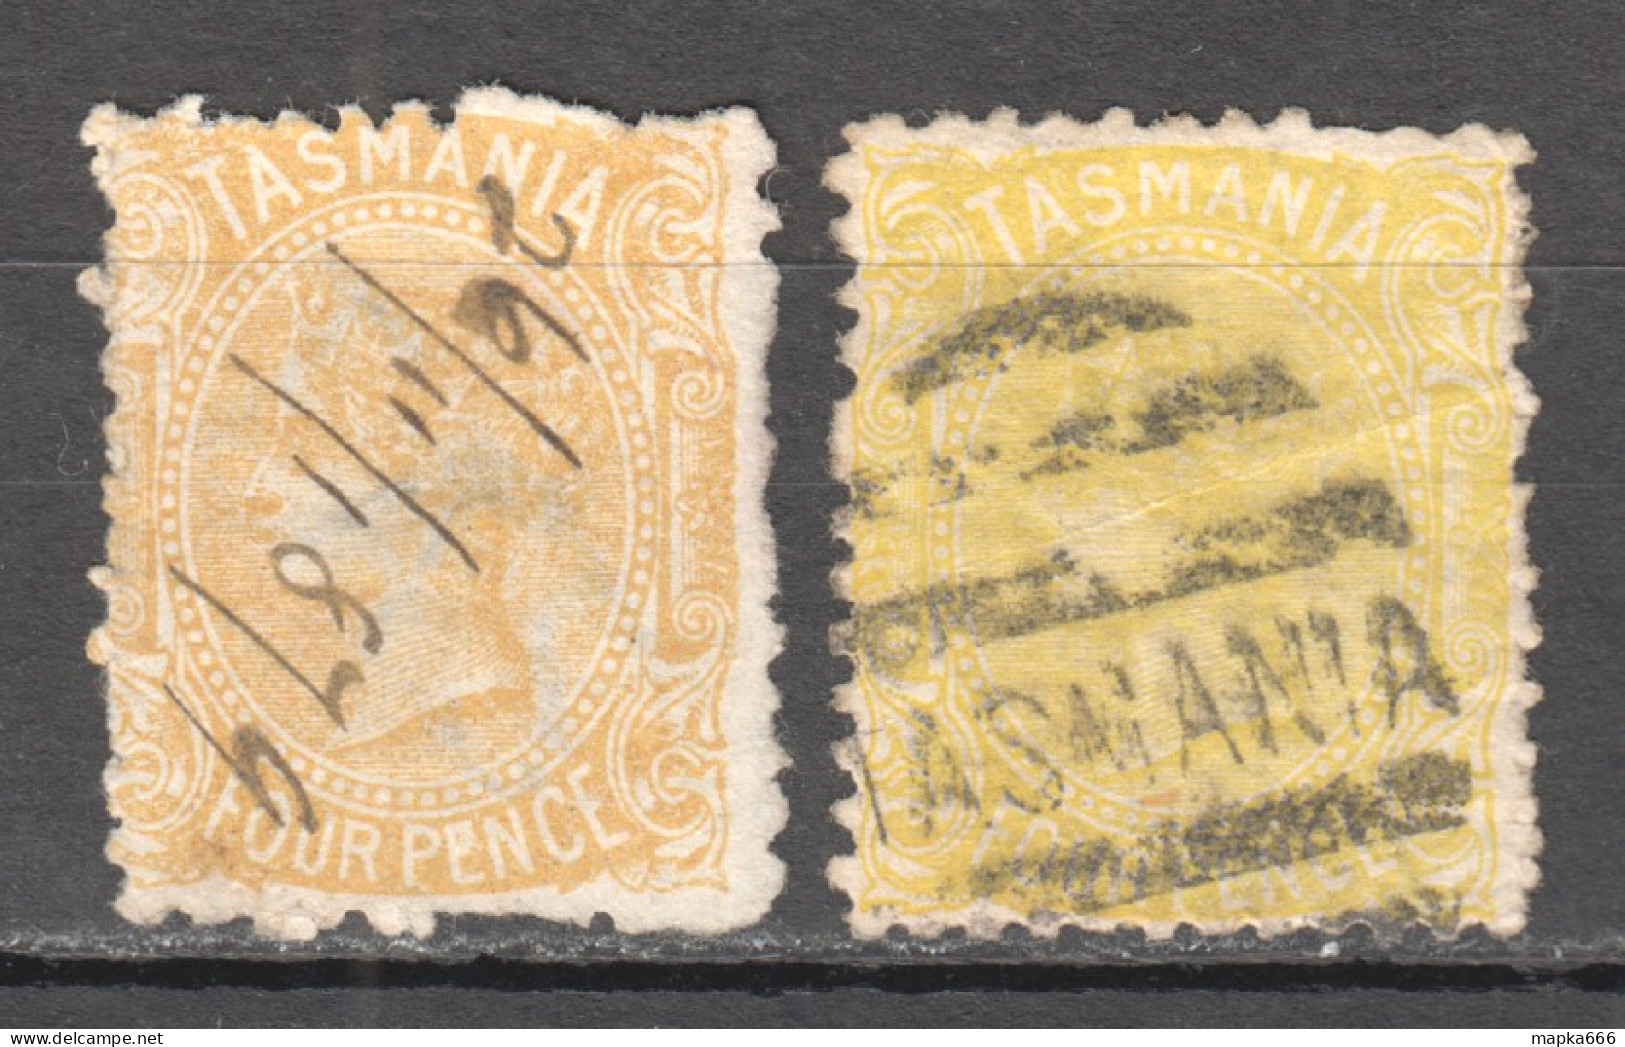 Tas139 1880 Australia Tasmania Four Pence Gibbons Sg #166 60 £ 2St Used - Used Stamps